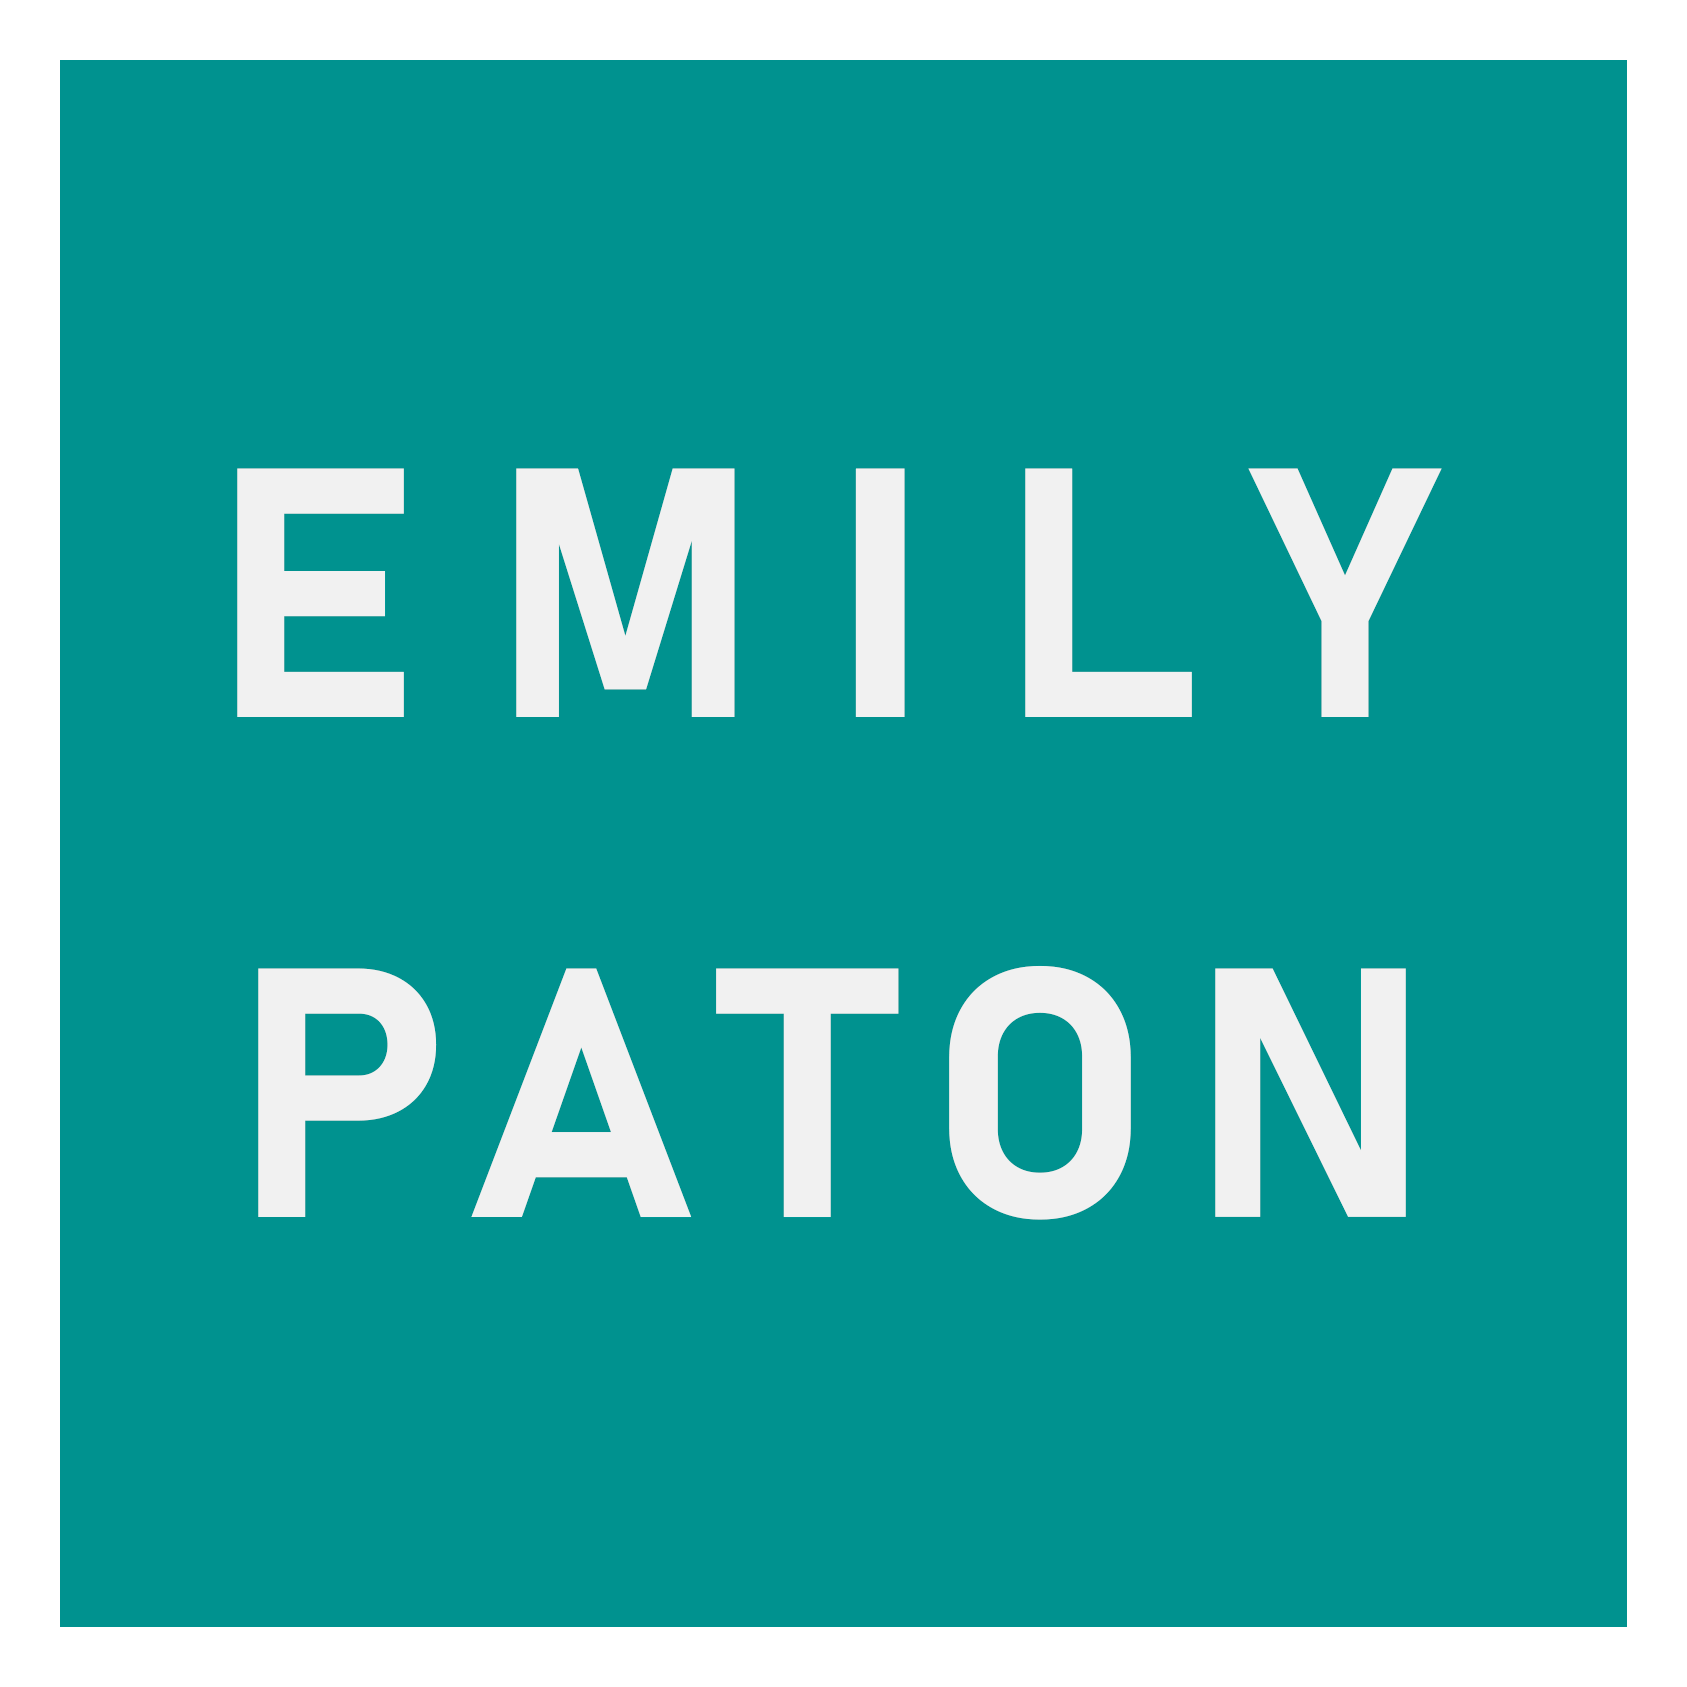 Emily Paton